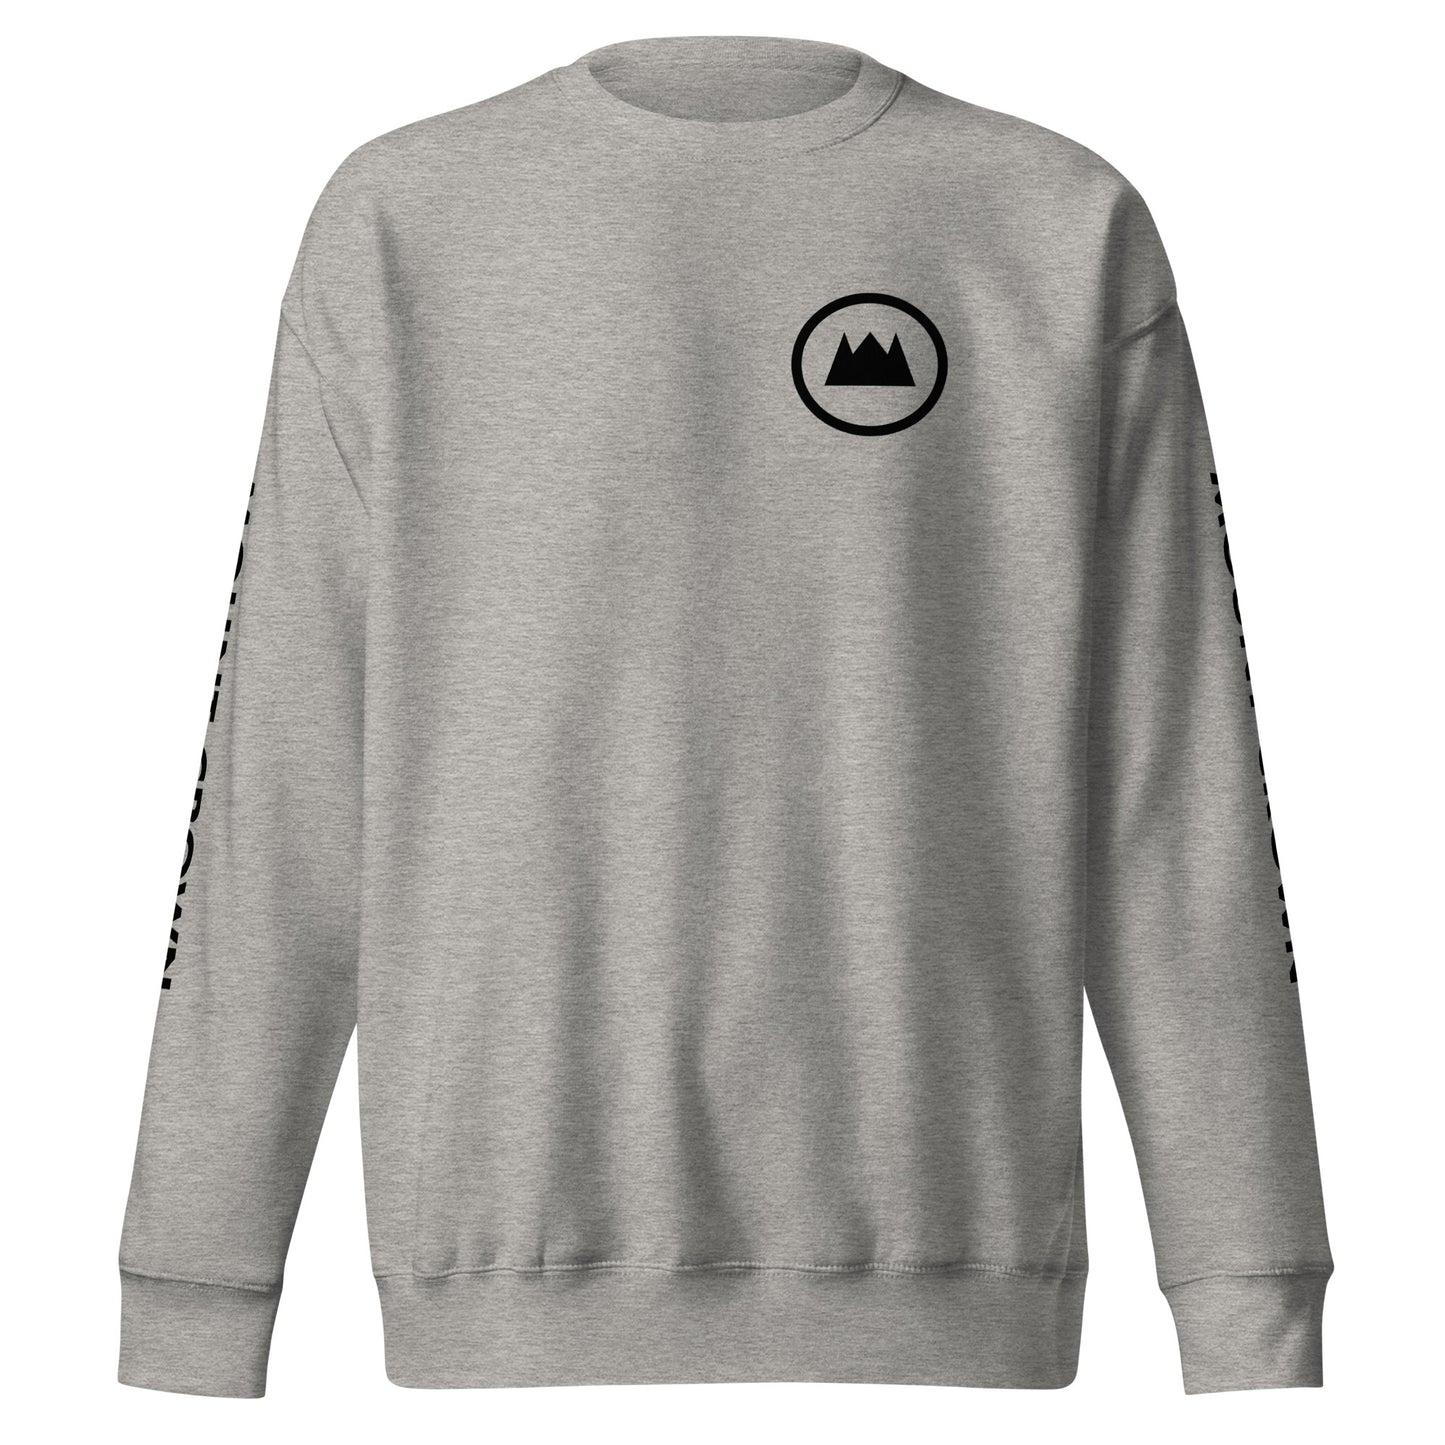 MOUNT CROWN Little Halo (Blk) Unisex Premium Sweatshirt